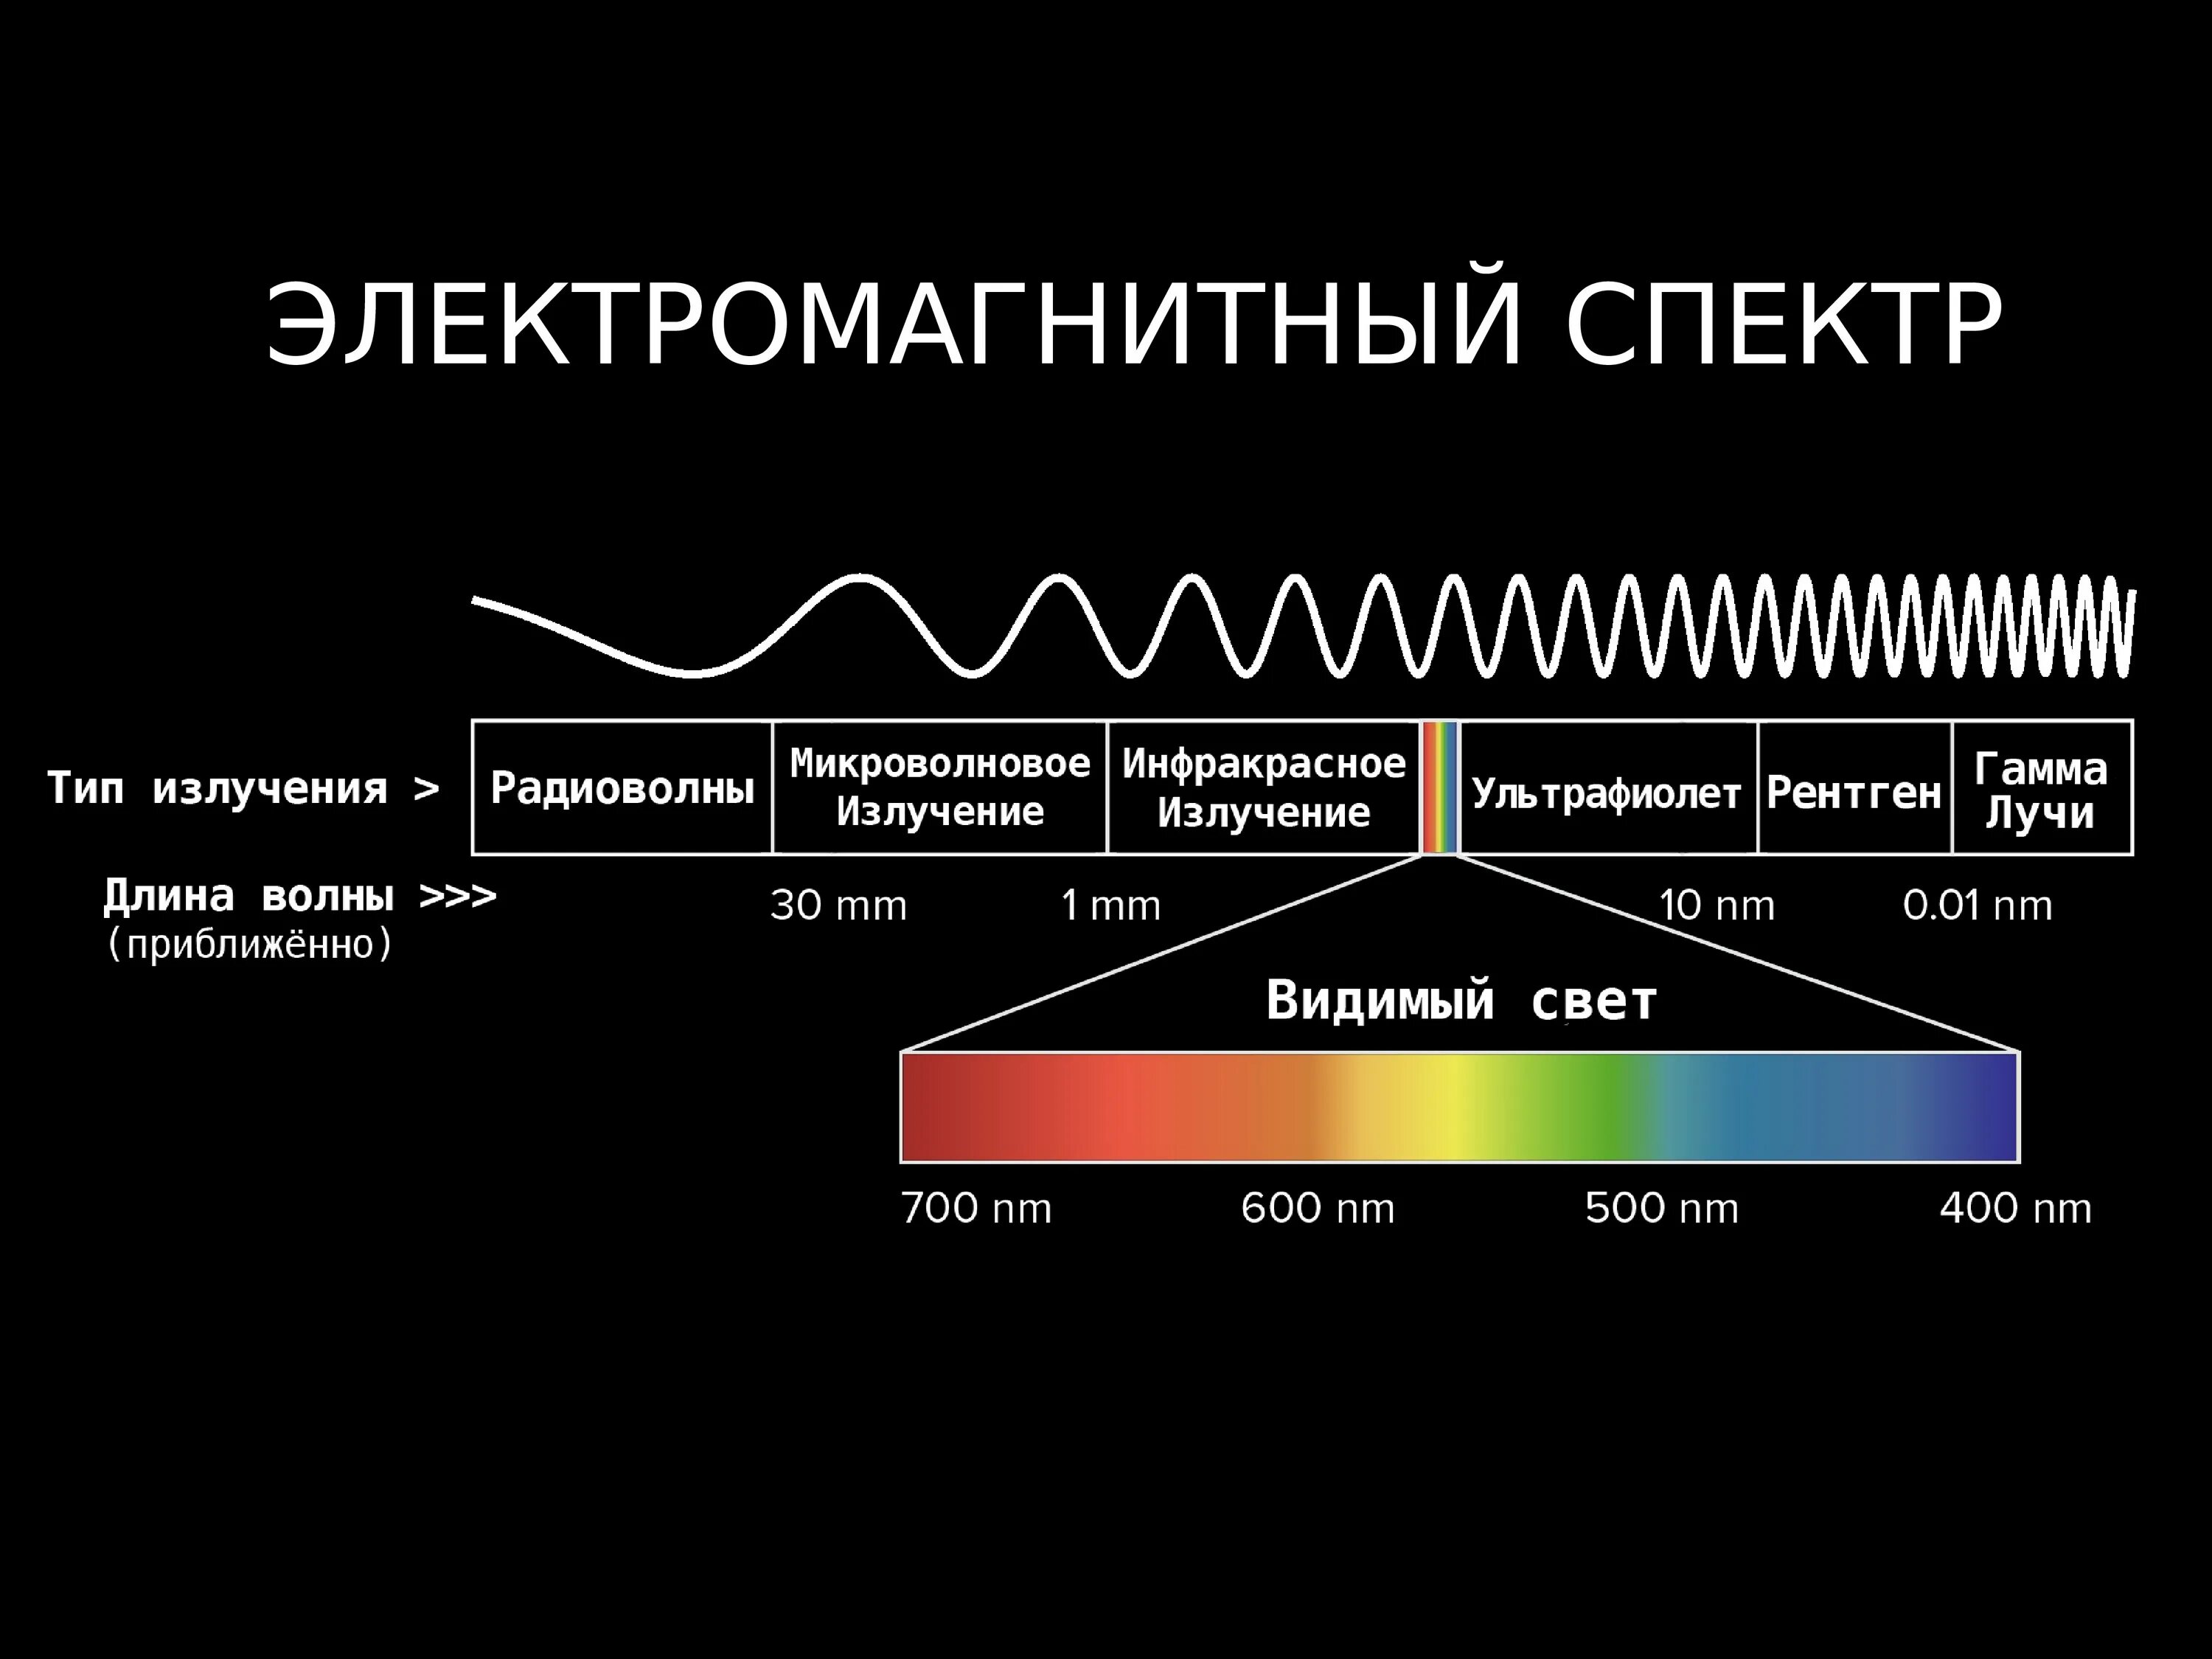 Длина волны 1 мм частота. Диапазоны спектра электромагнитного излучения. Электромагнитное излучение спектр электромагнитного излучения. Спектр длин волн электромагнитных излучений. Длина волны электромагнитного излучения.